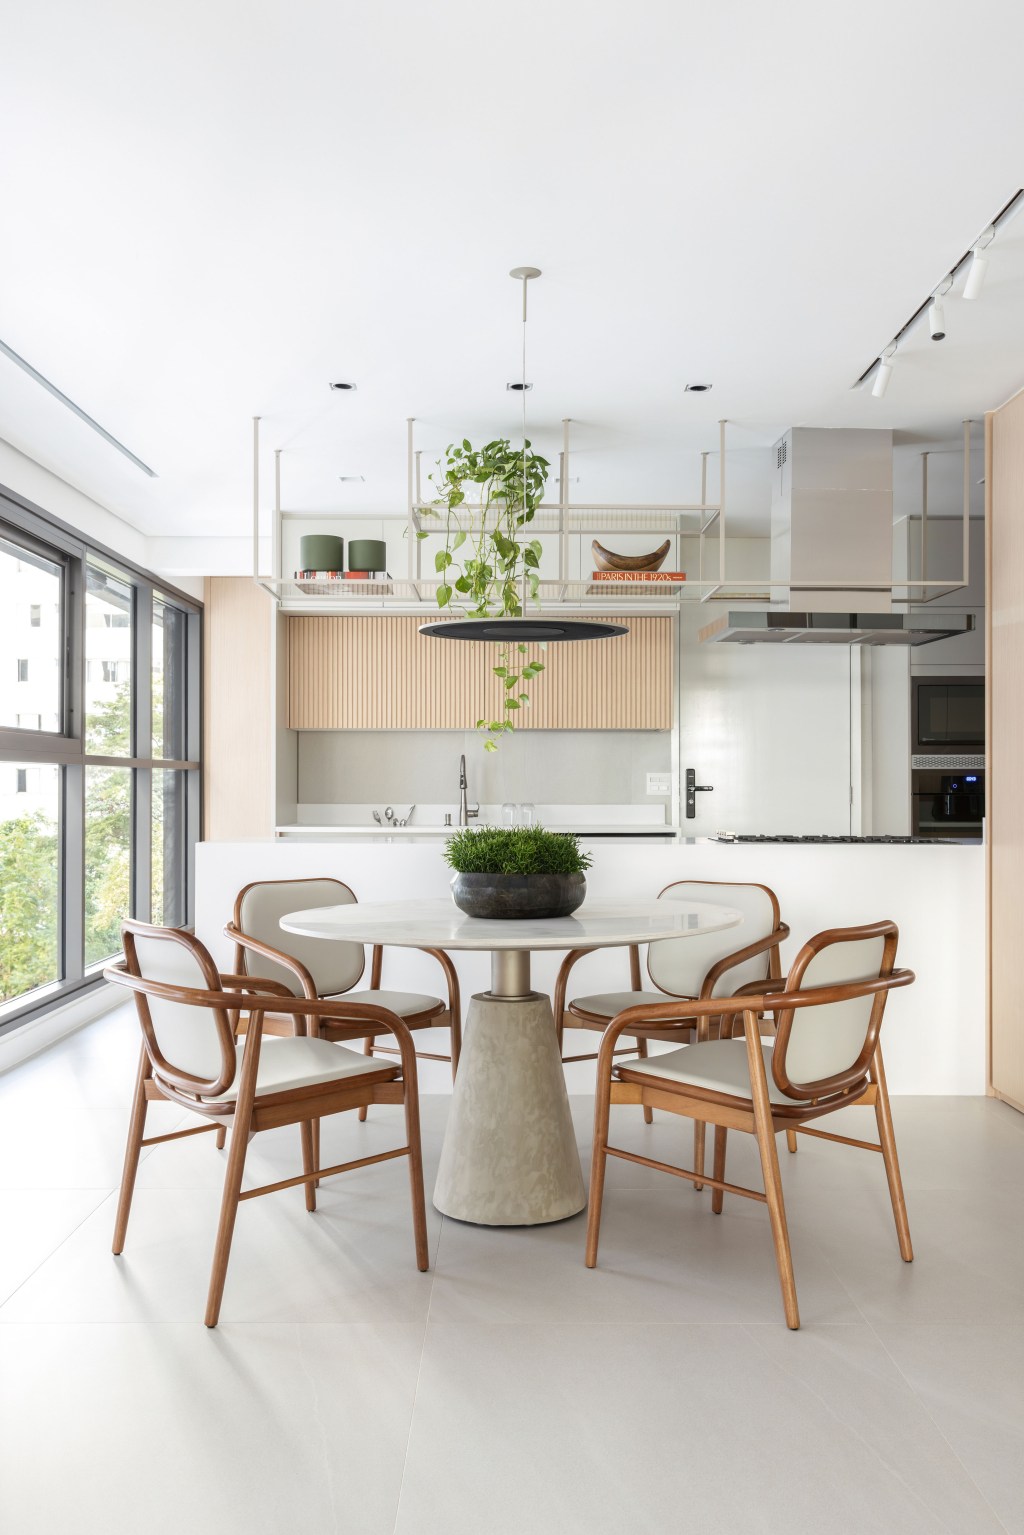 Décor neutro e ambientes integrados e fluidos marcam apartamento de 140 m². Projeto de Paula Muller. Na foto, varanda gourmet com bancada, mesa redonda e marcenaria ripada.